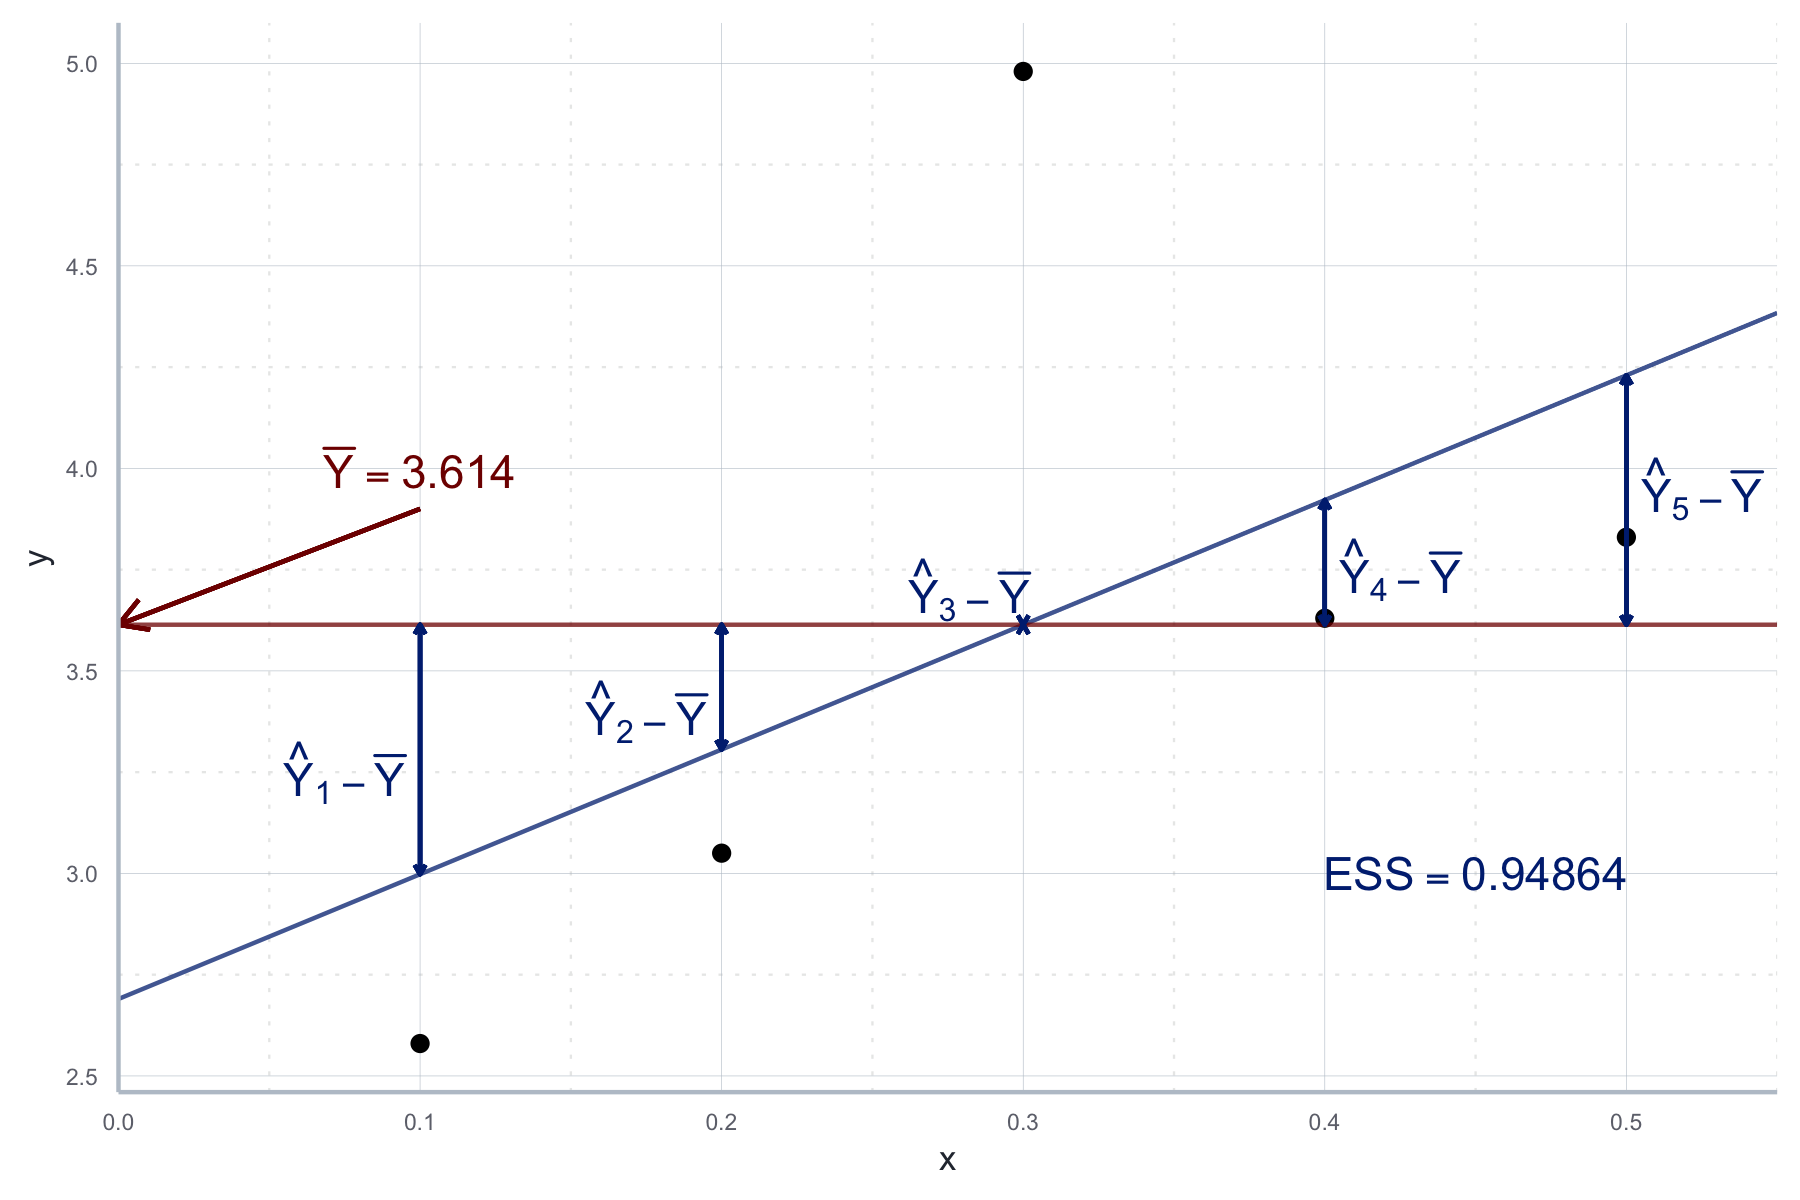 Variation in der abhängigen Variable, die durch die Regression erklärt wird (ESS).